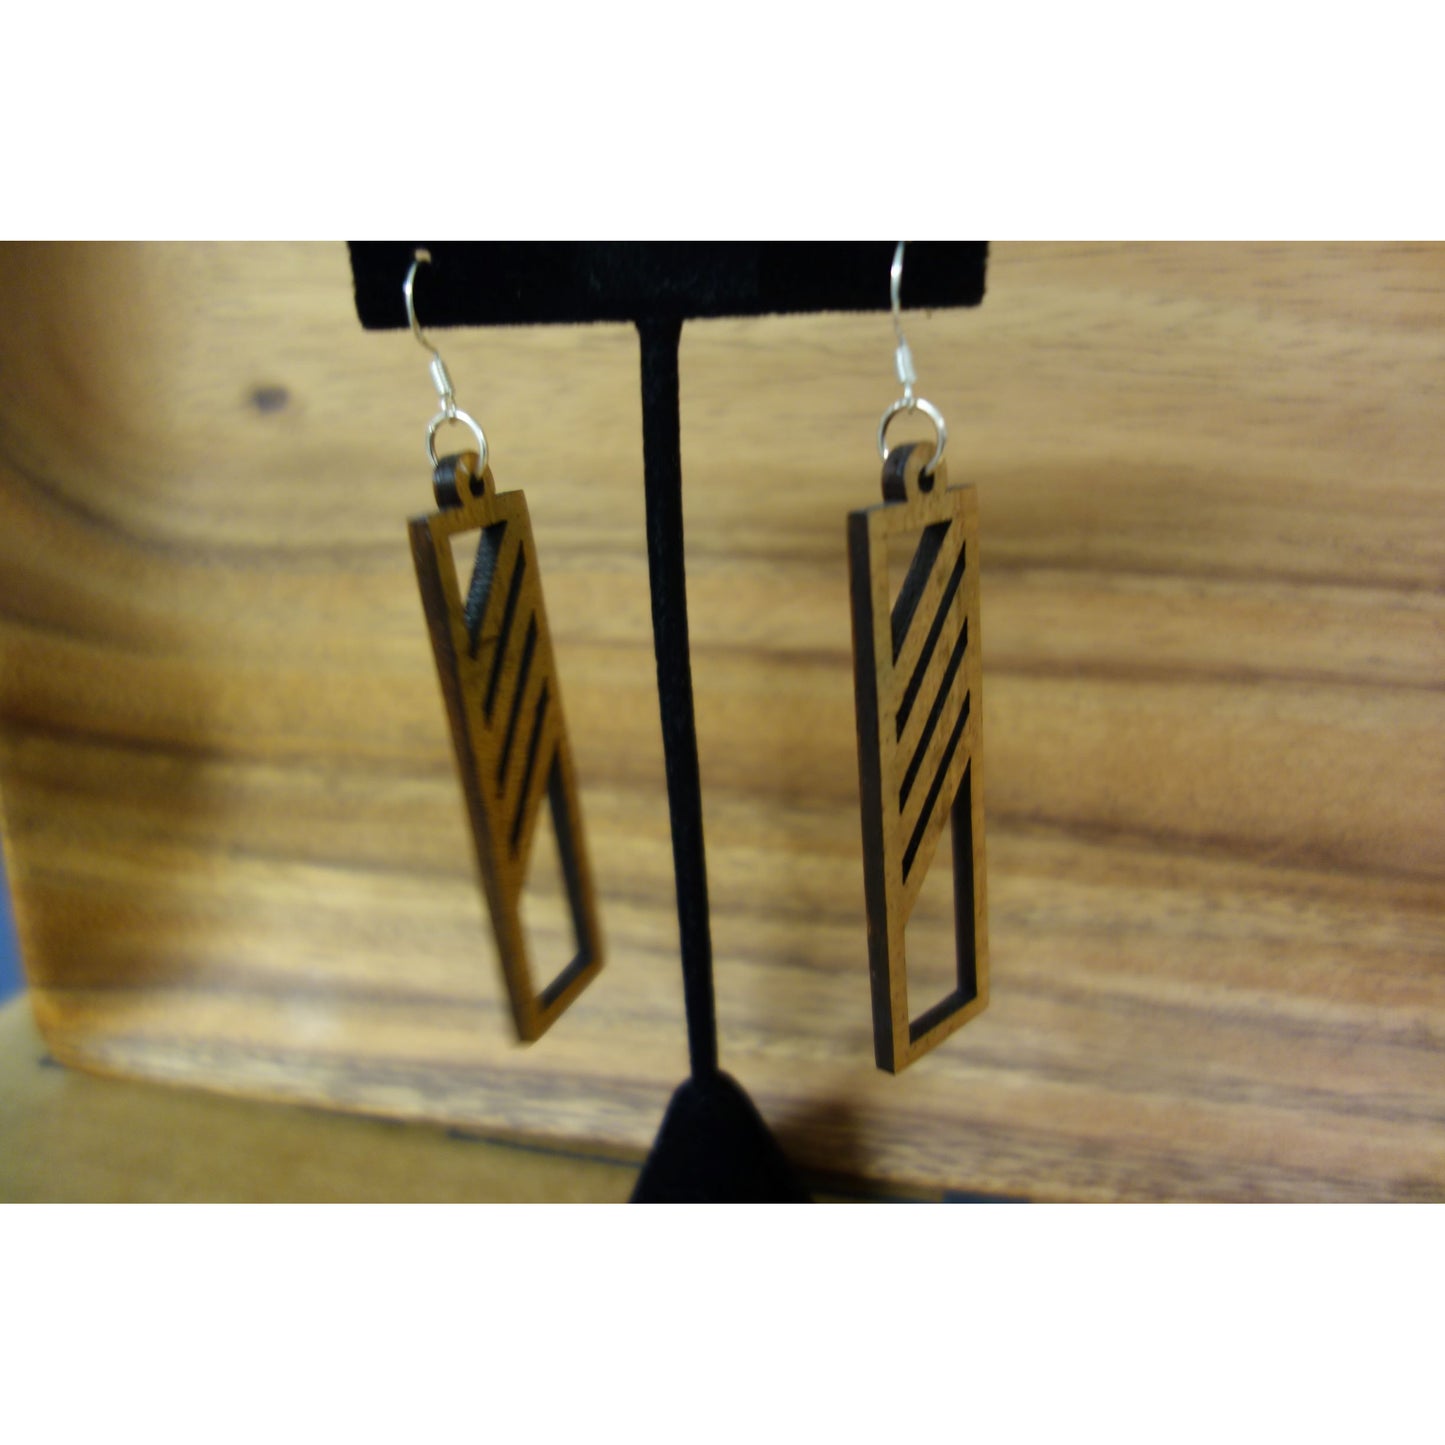 Koa Wood Stripe Earrings